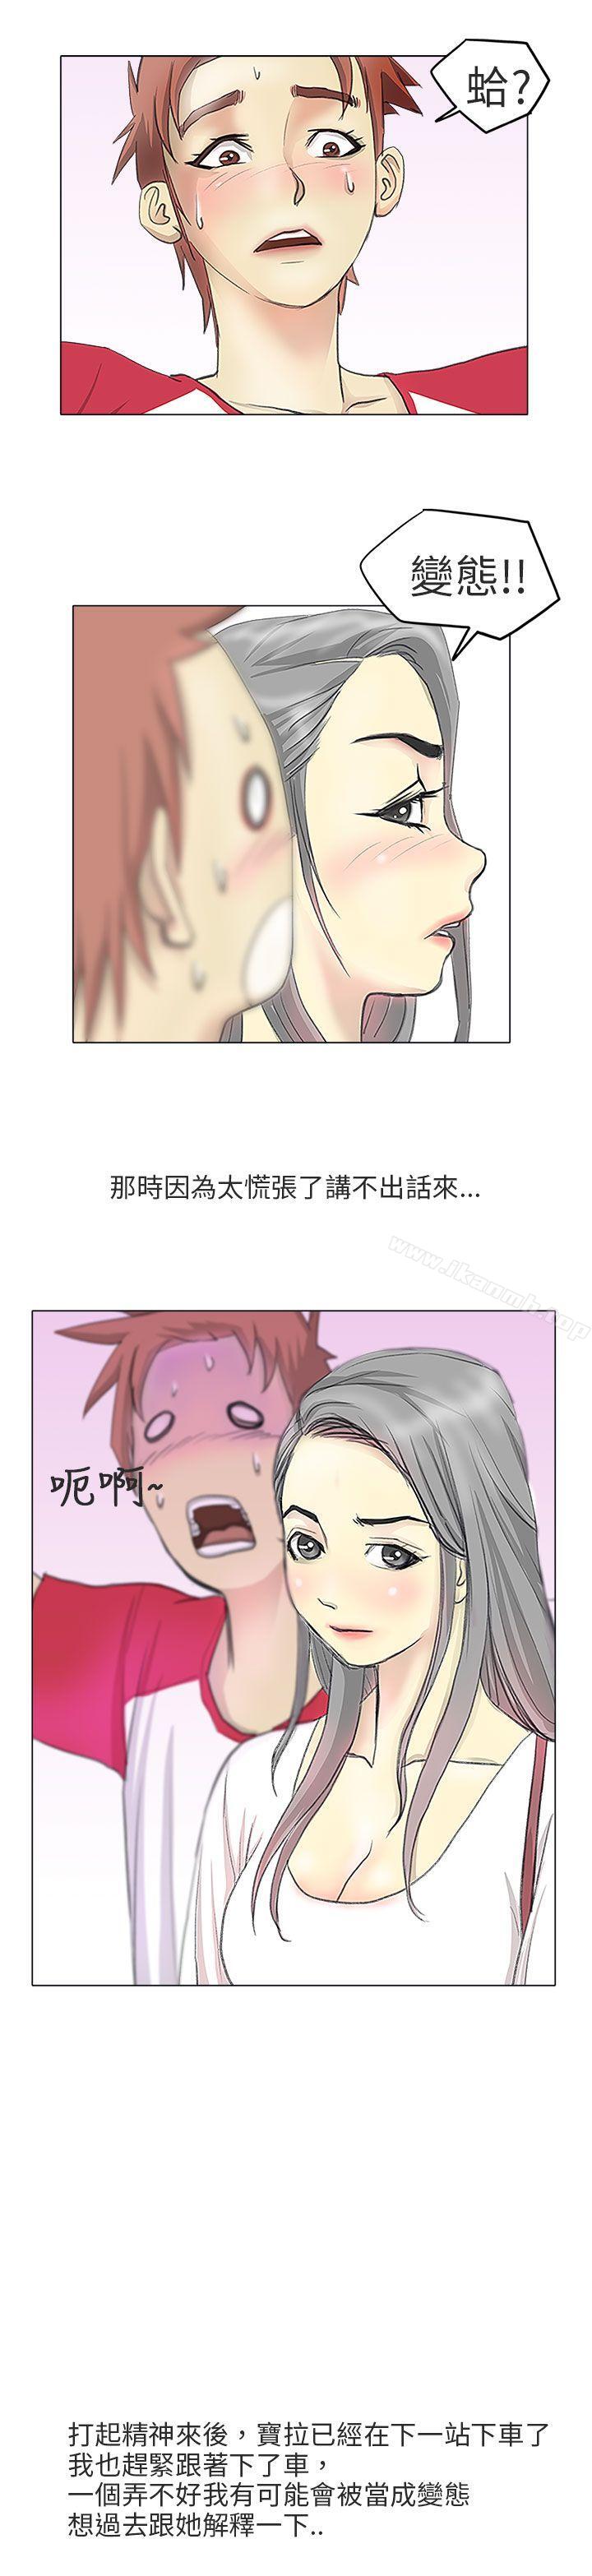 漫画韩国 秘密Story第二季   - 立即阅读 第二季 電車癡漢?(上)第20漫画图片